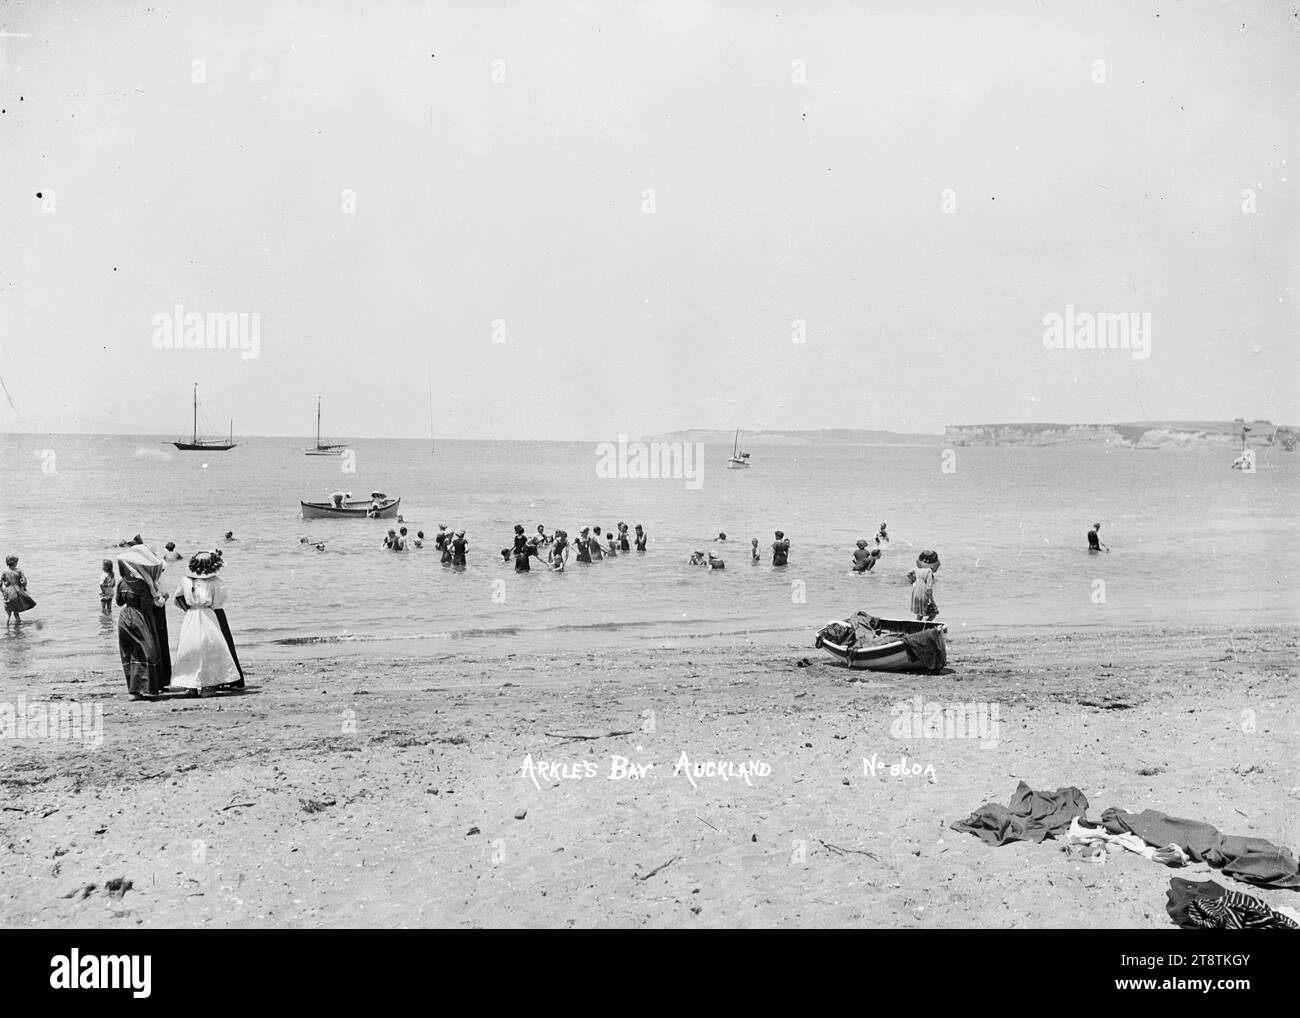 Badegäste in Arkles Bay, Auckland, Neuseeland, Blick auf Erwachsene und Kinder, die im Wasser in der Nähe des Ufers in Arkles Bay spielen. Zwei Frauen stehen am Wasser und beobachten die Badenden. Entworfene Kleidung kann man im unmittelbaren Vordergrund und im Schlauchboot am Wasserrand sehen. Die Küste der East Coast Buys und die Insel Rangitoto sind in der Ferne zu sehen. Aufgenommen in den frühen 1900er Jahren Stockfoto